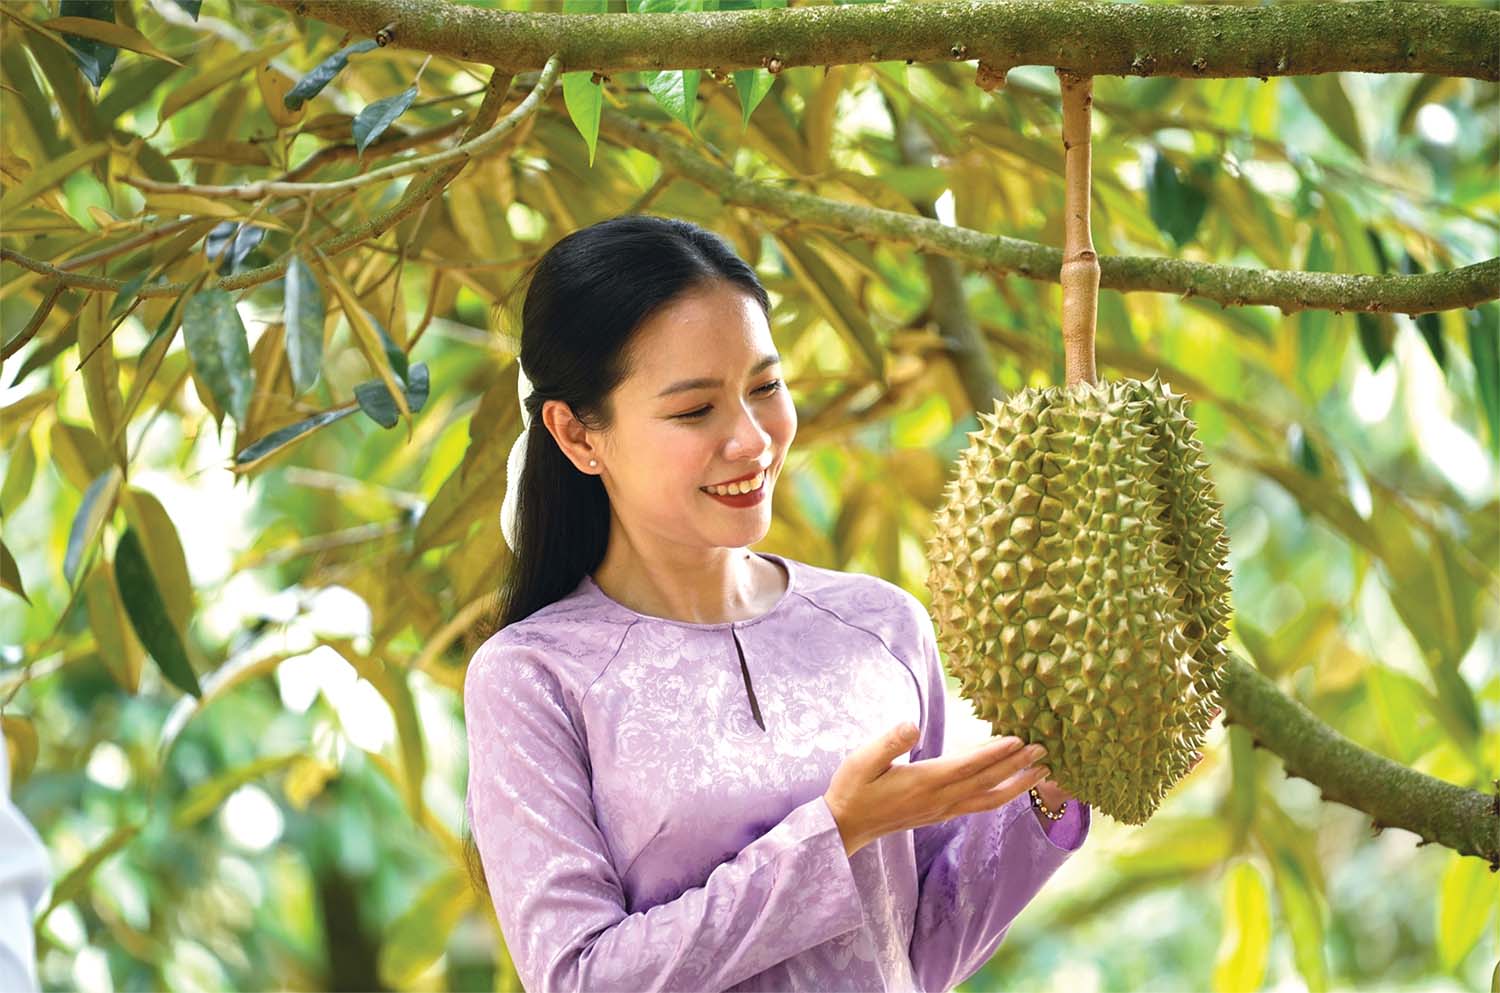 Sầu riêng là một trong những loại trái cây xuất khẩu có giá trị cao của Việt Nam	Ảnh: Khương Hồng Thủy